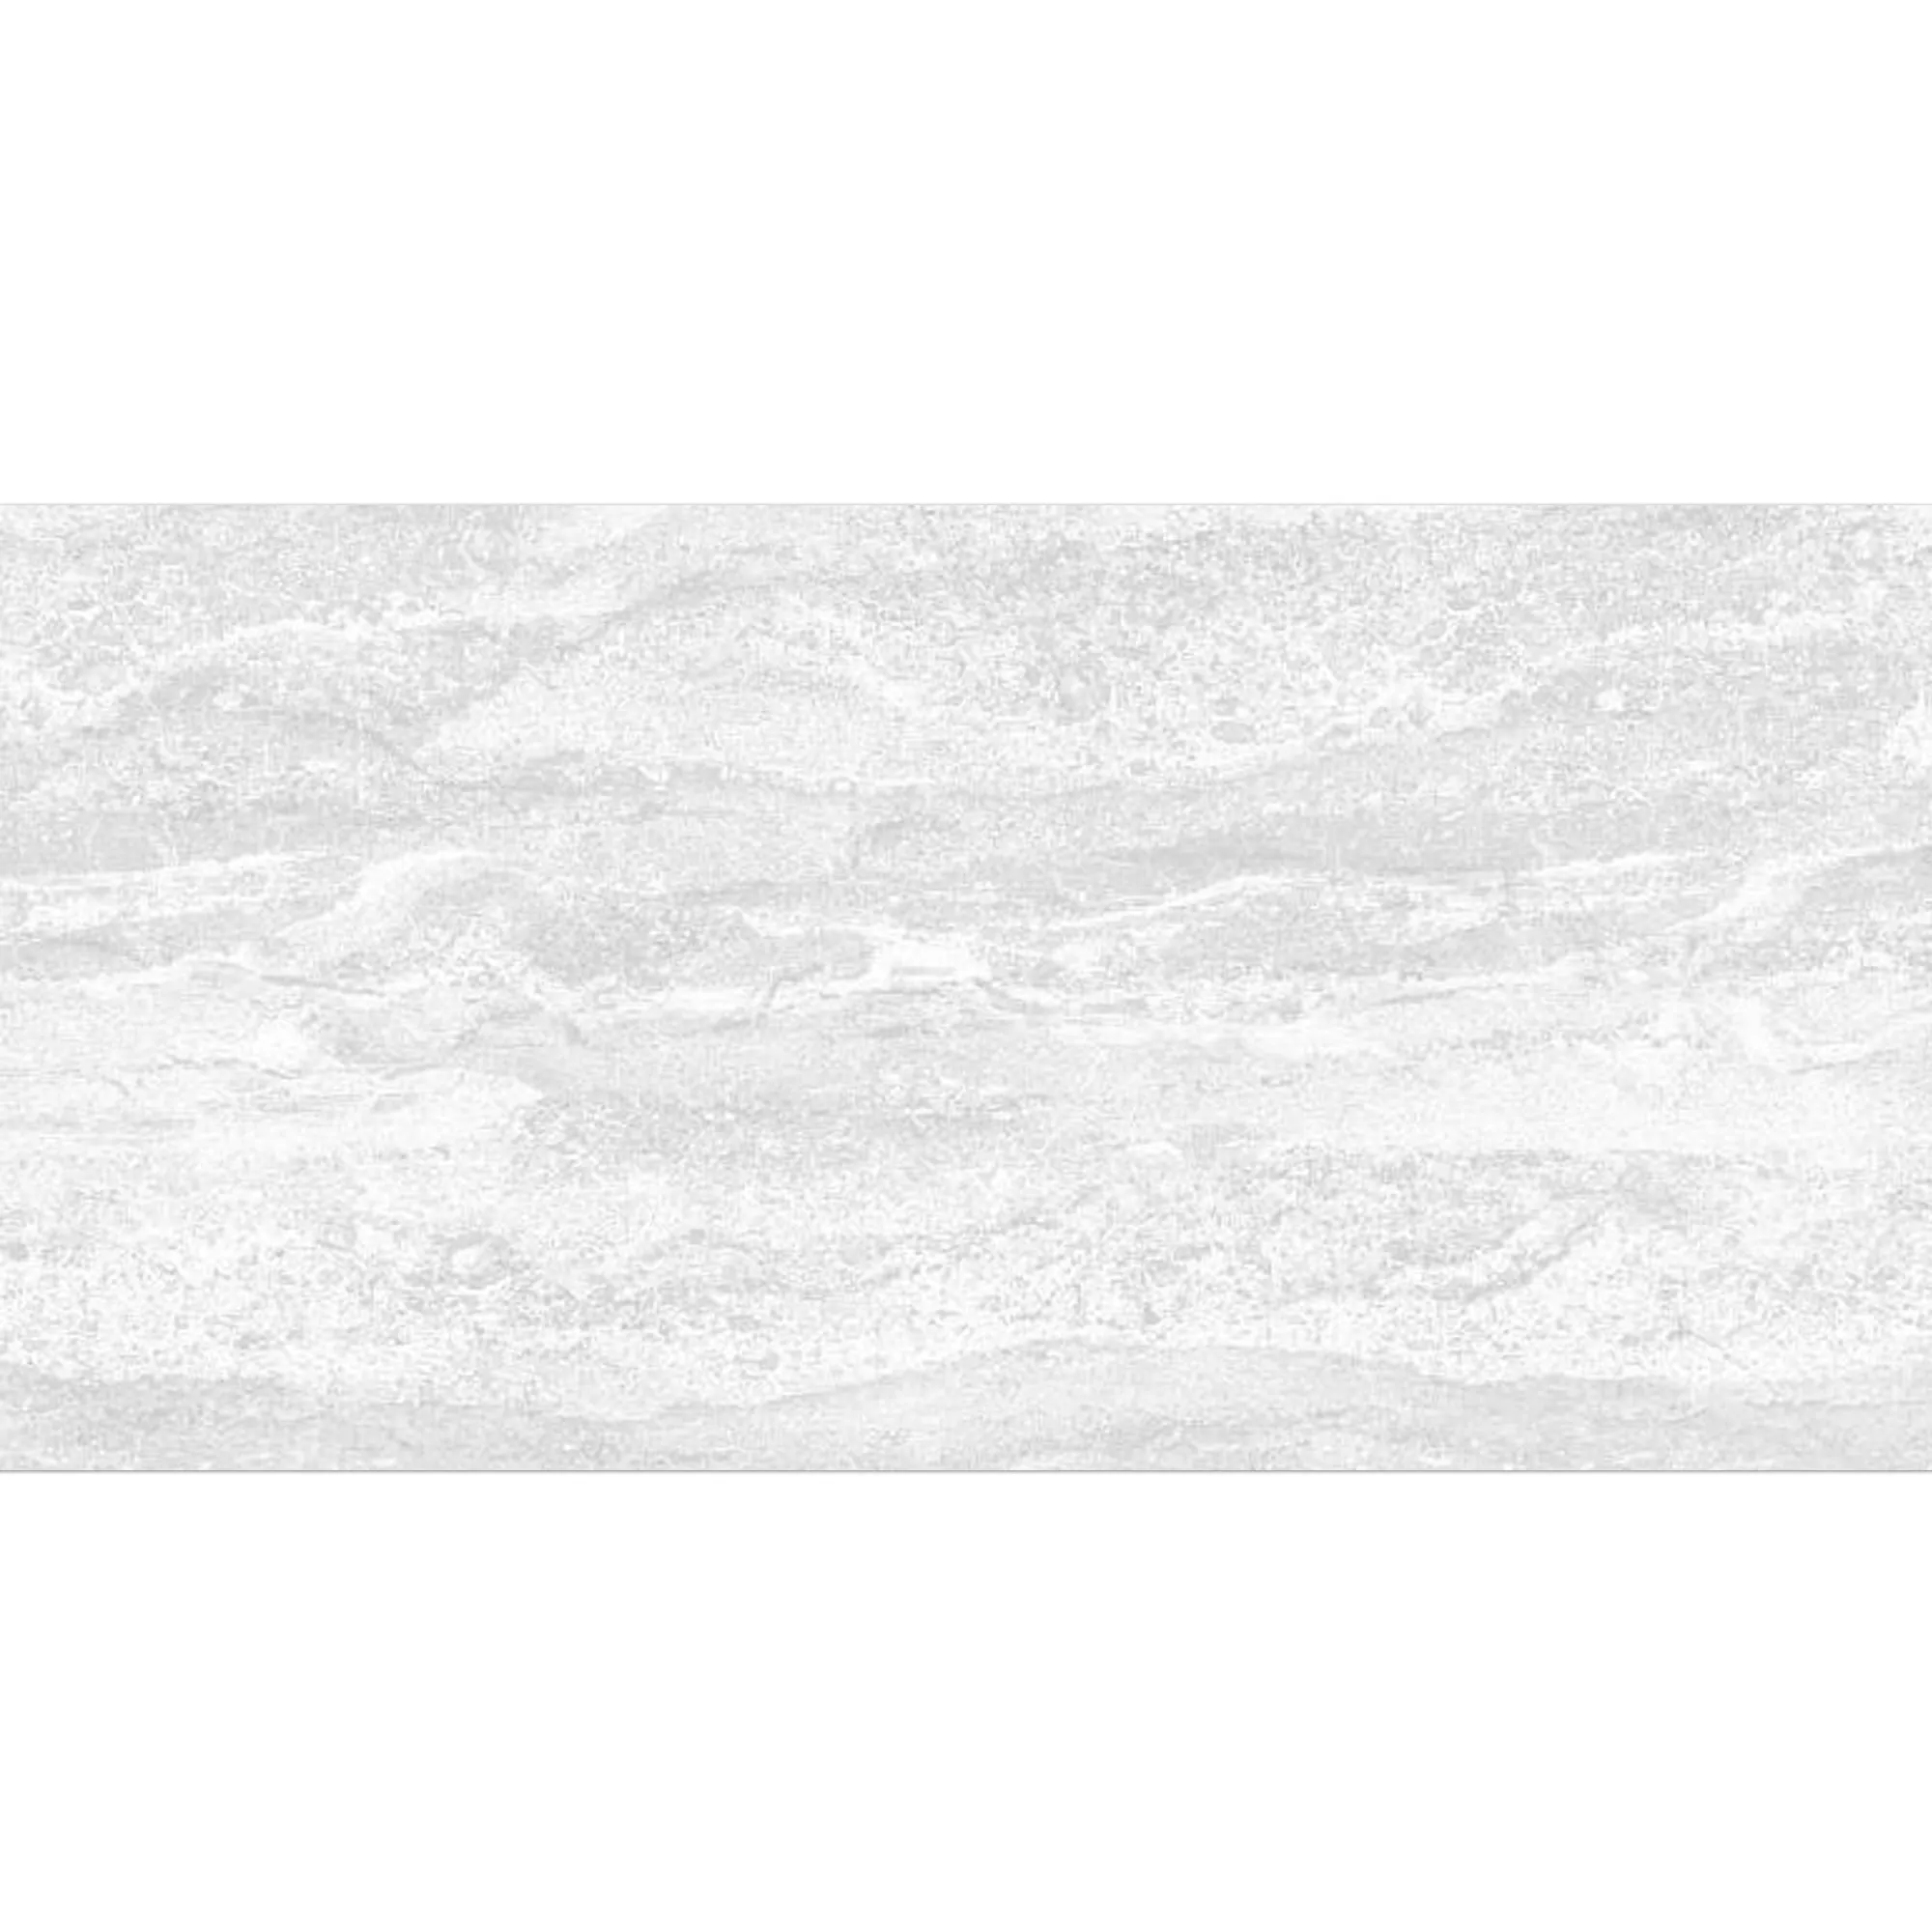 Azulejo Bellinzona Branco Estruturada 30x60cm